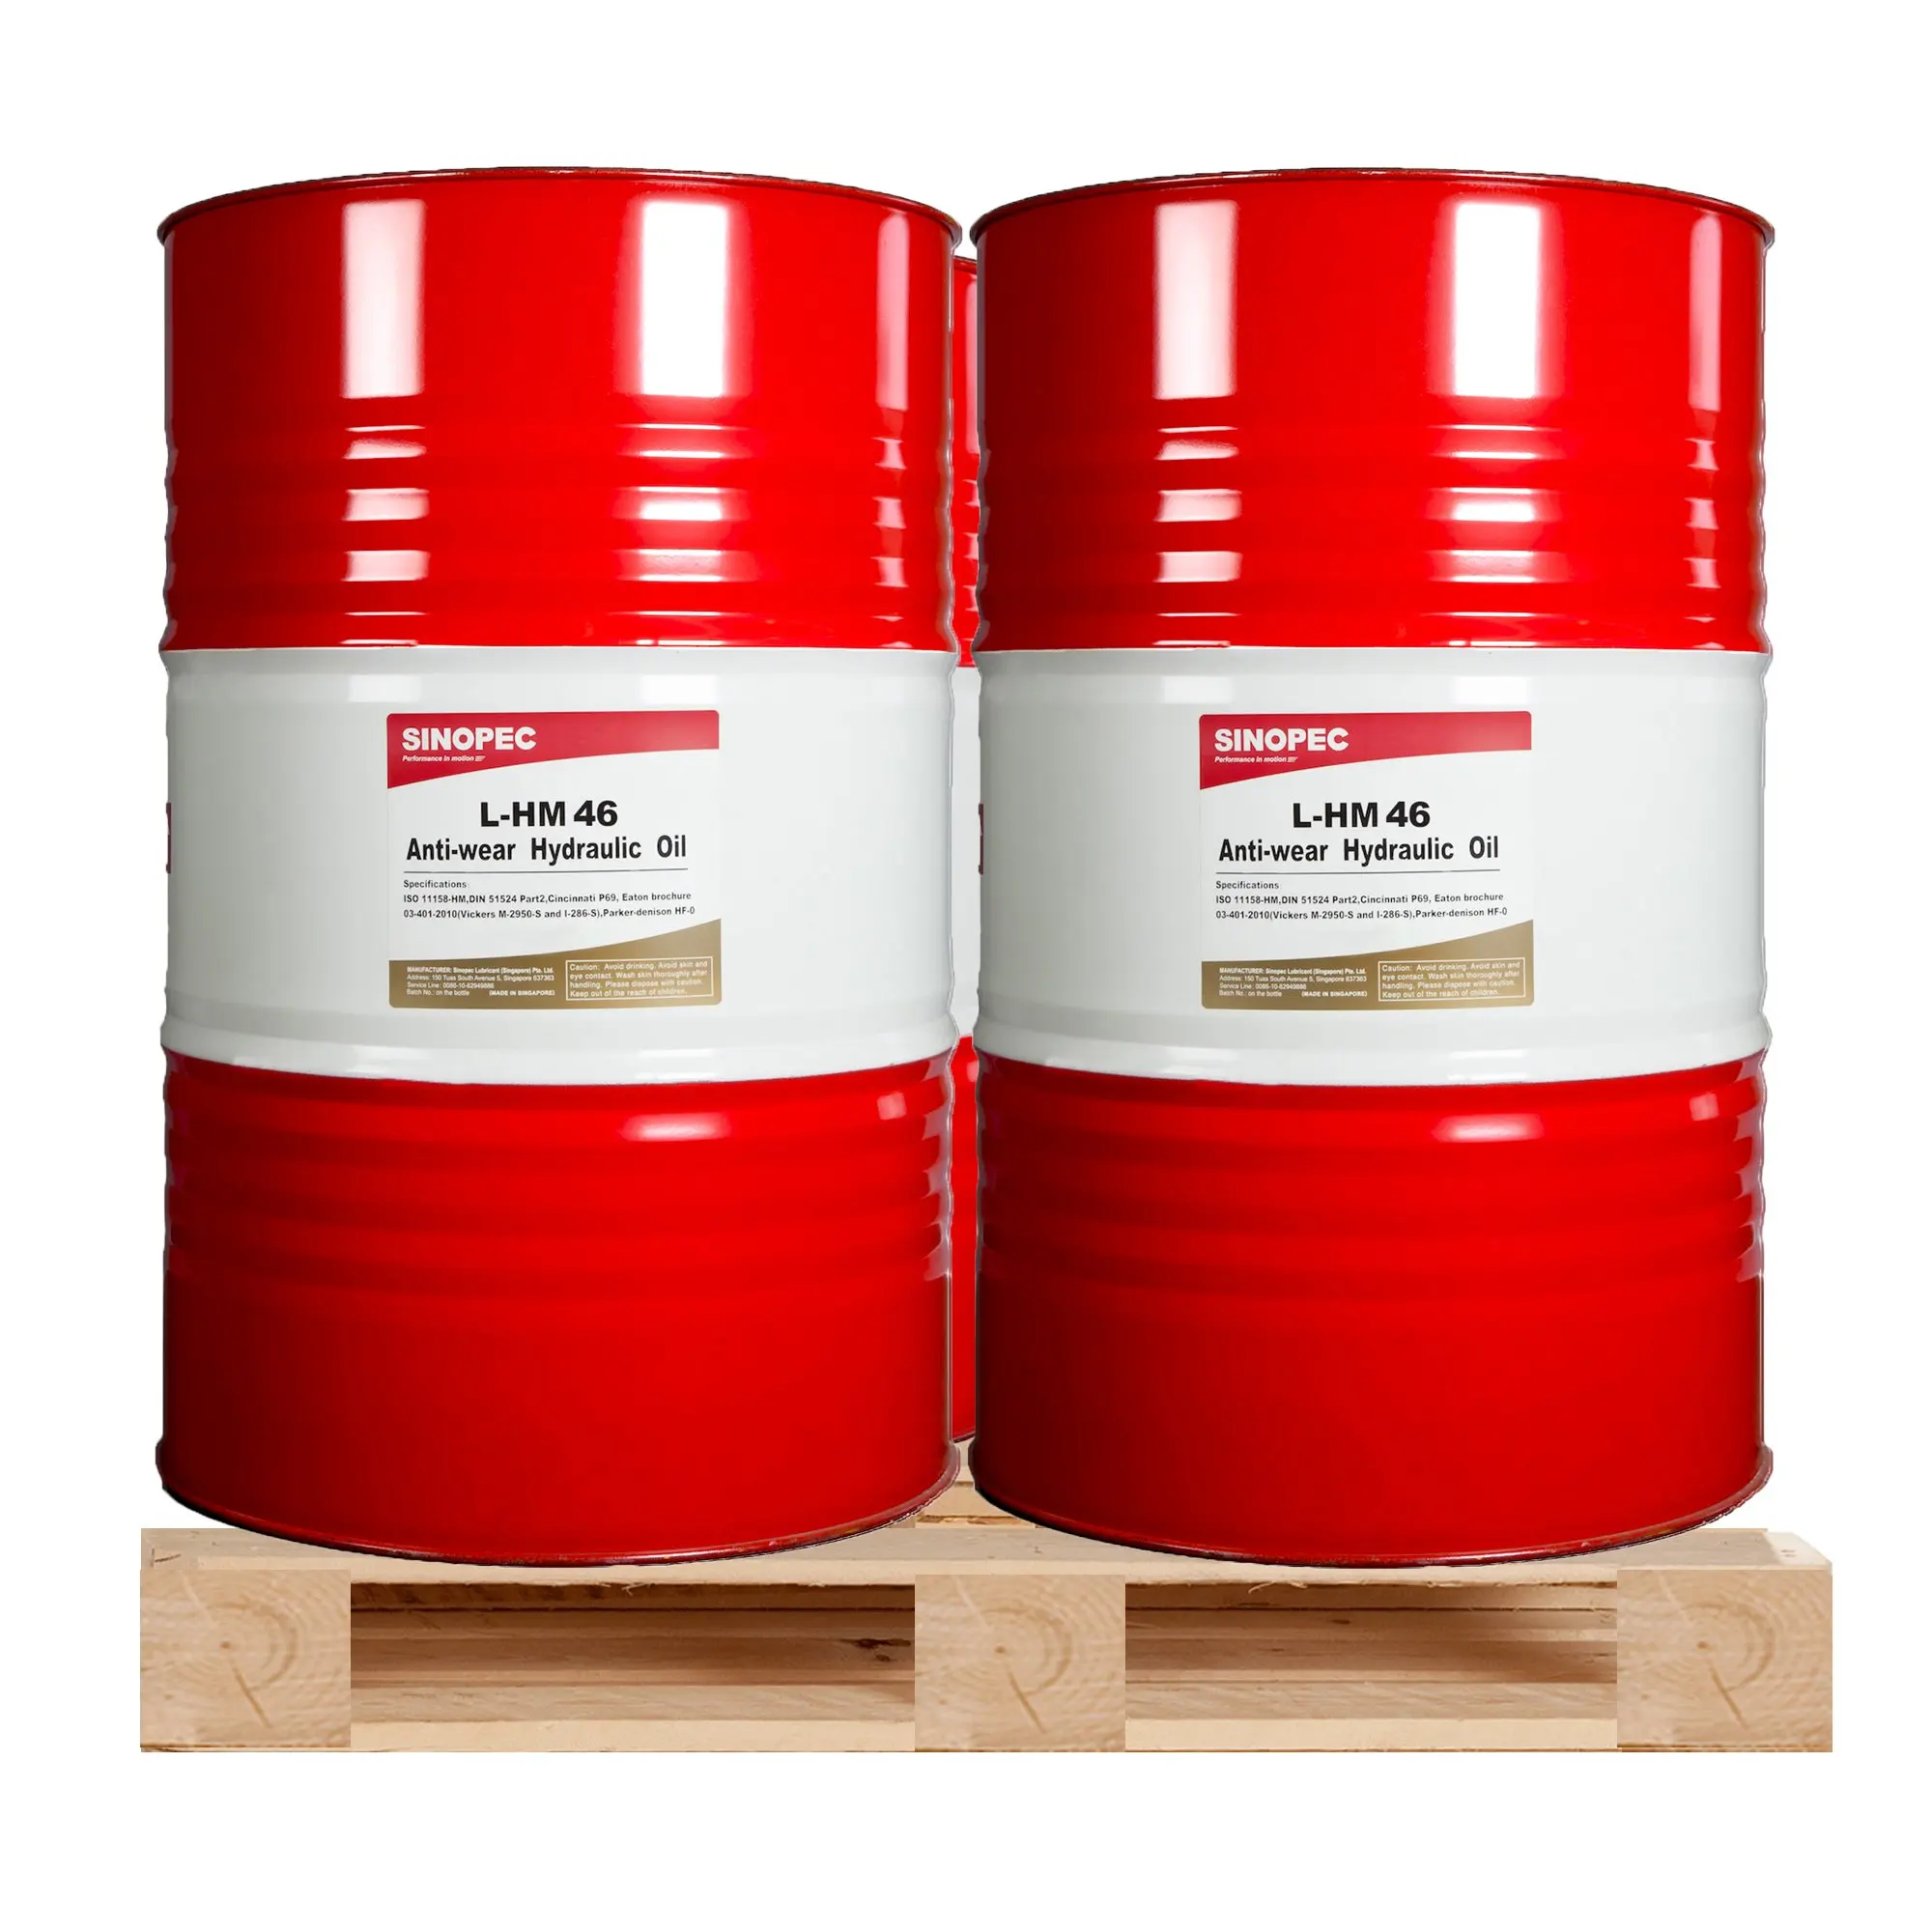 Гидравлическое масло iso 32. Vg46 масло Hydraulic Oil. ISO VG 32 масло. AW 46 Hydraulic Oil. Масло гидравлическое ISO VG 46.